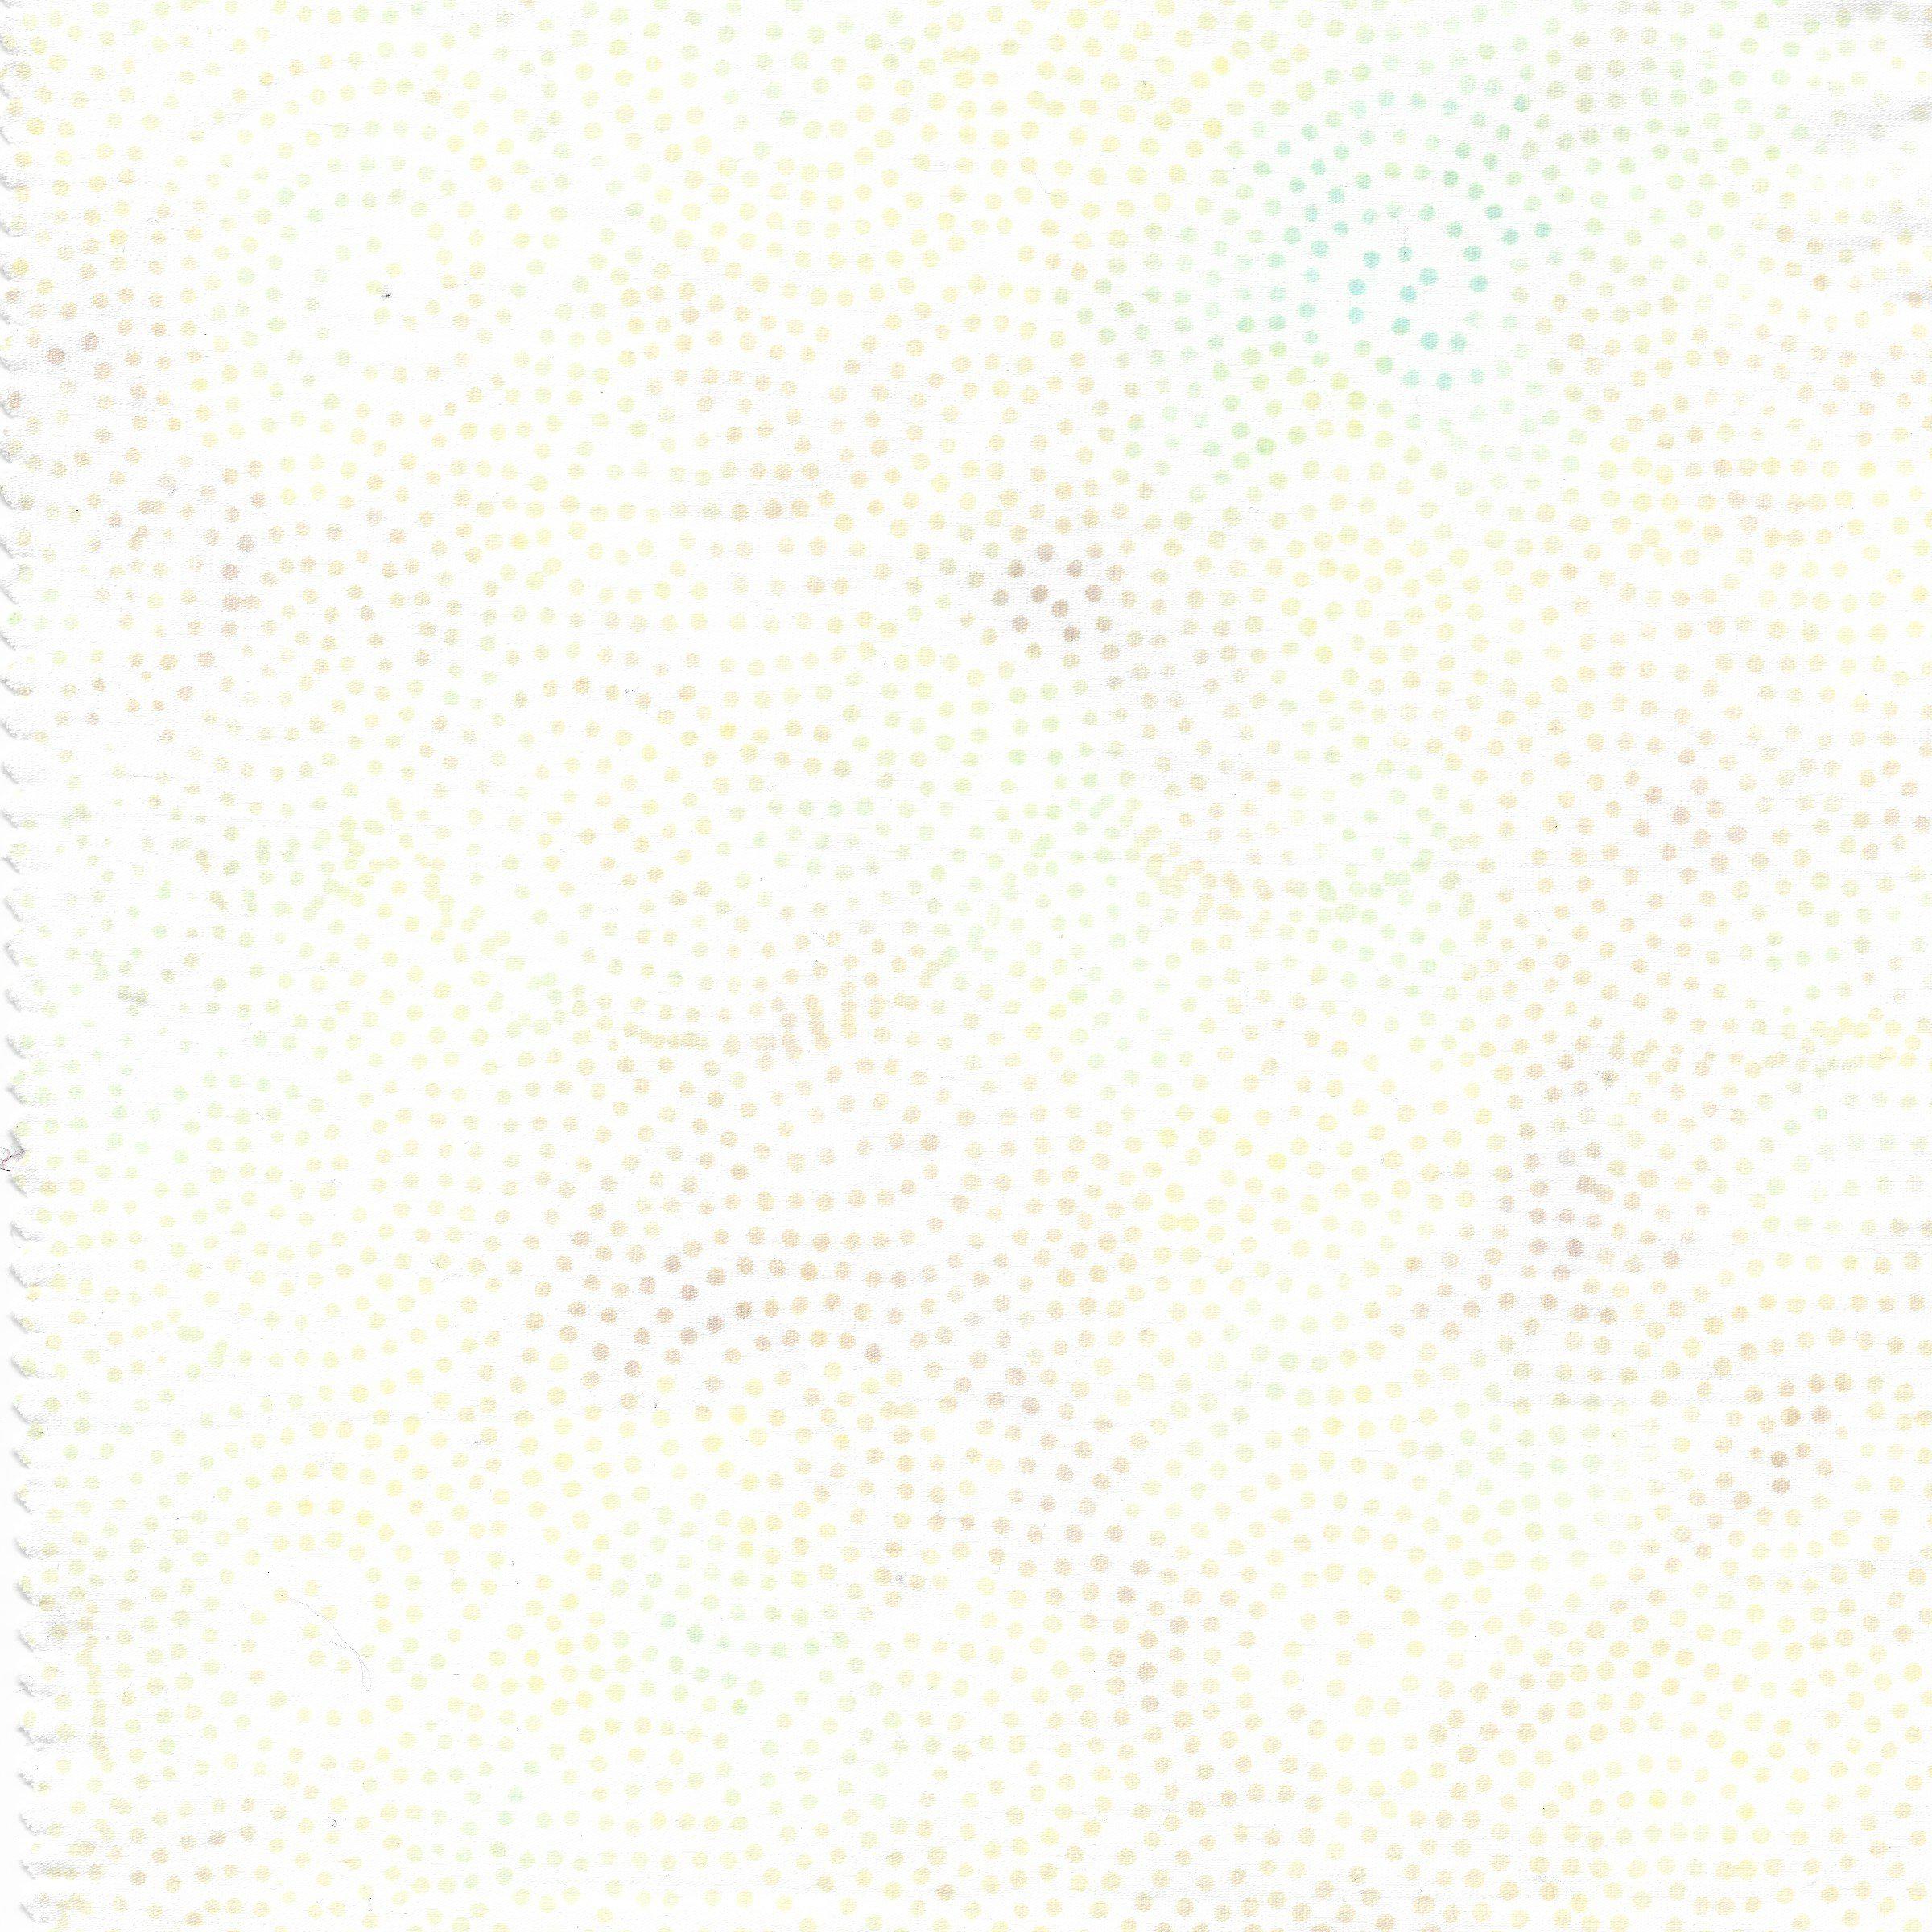 Neutrals Egg White Swirl Dot Batik Fabric